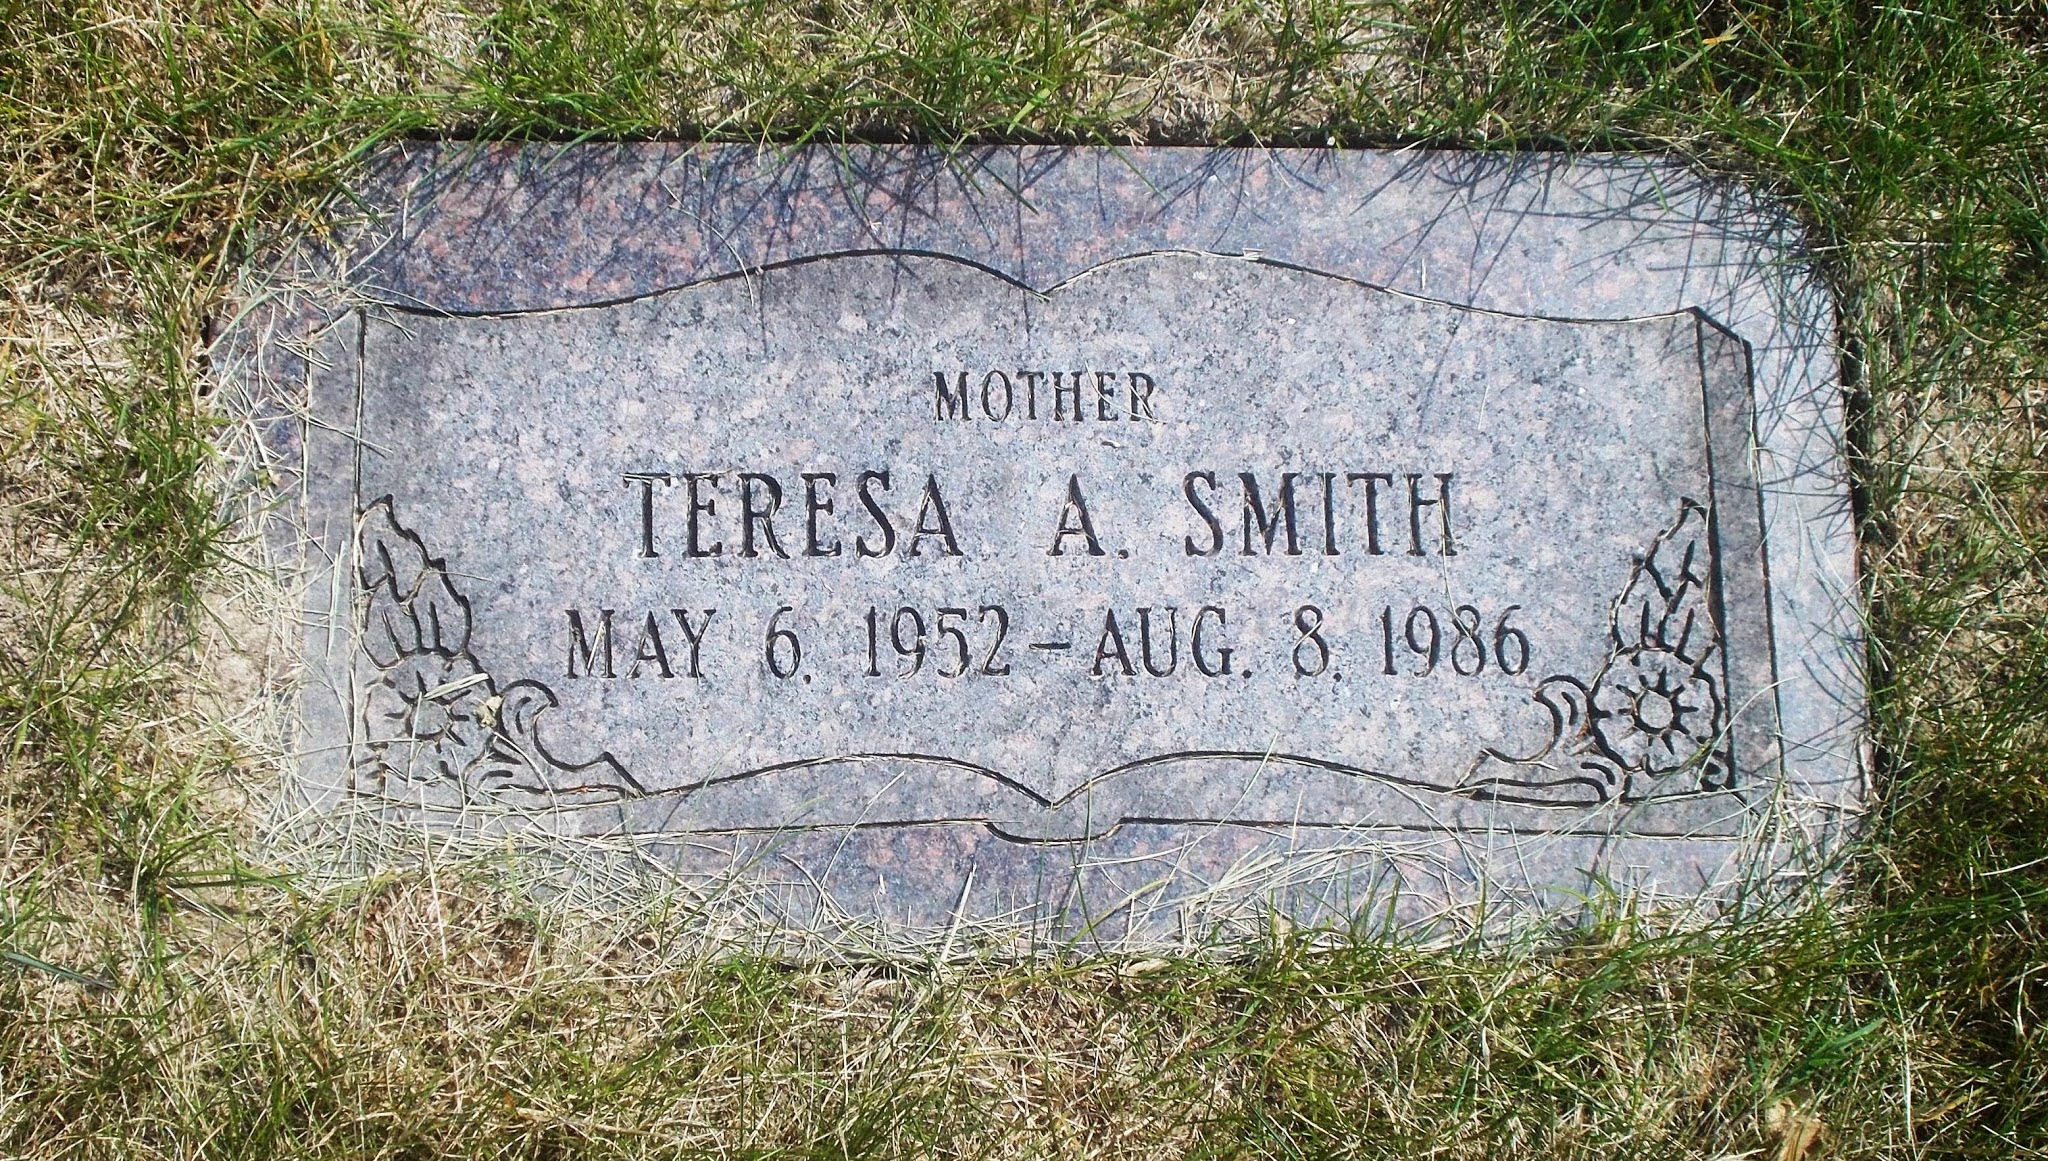 Teresa A Smith